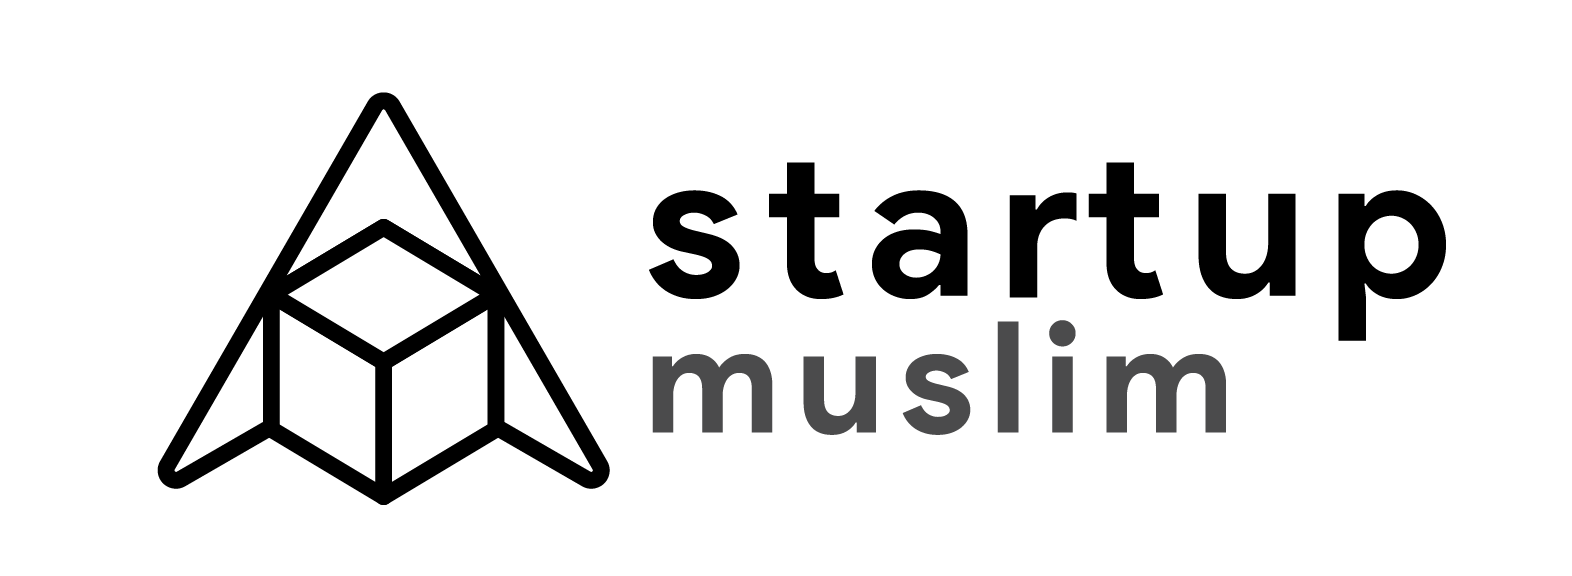 Startup Muslim – Créer votre business en ligne et vivez enfin votre vie Logo